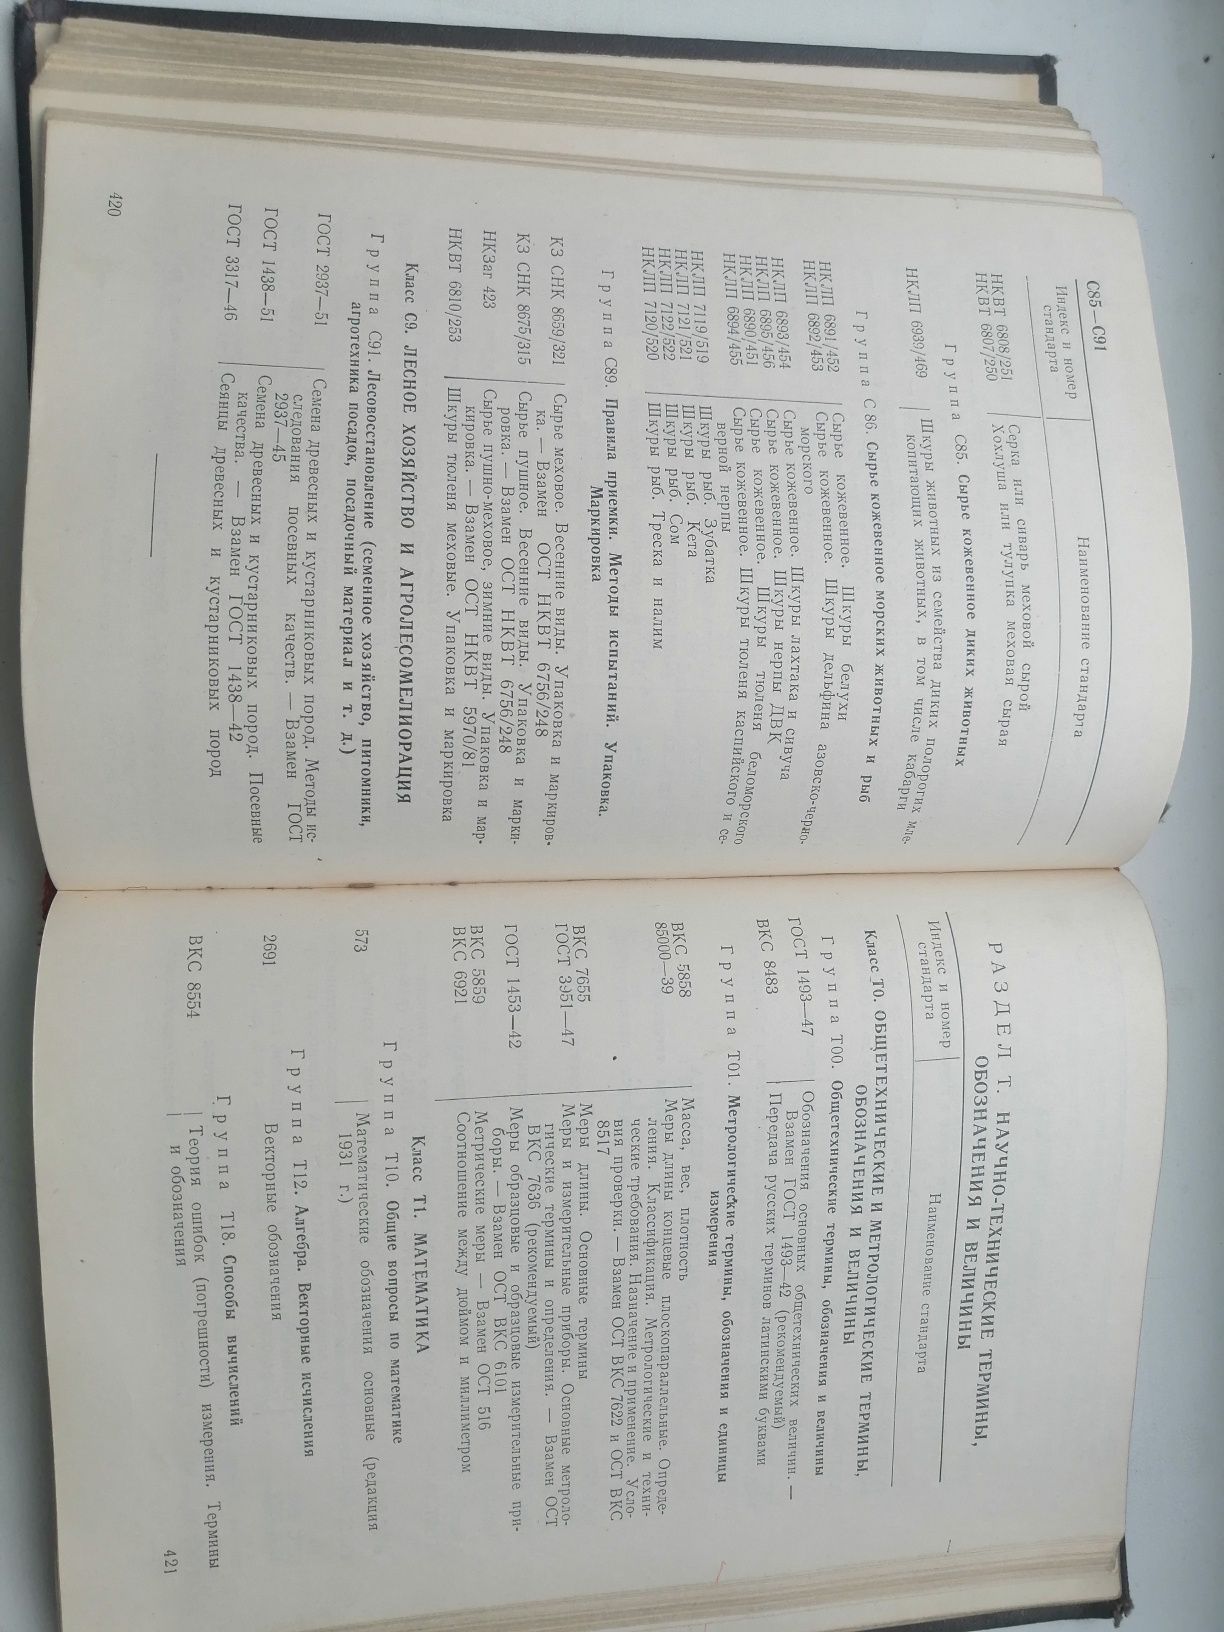 Книга " Указатель государственных стандартов 1955"